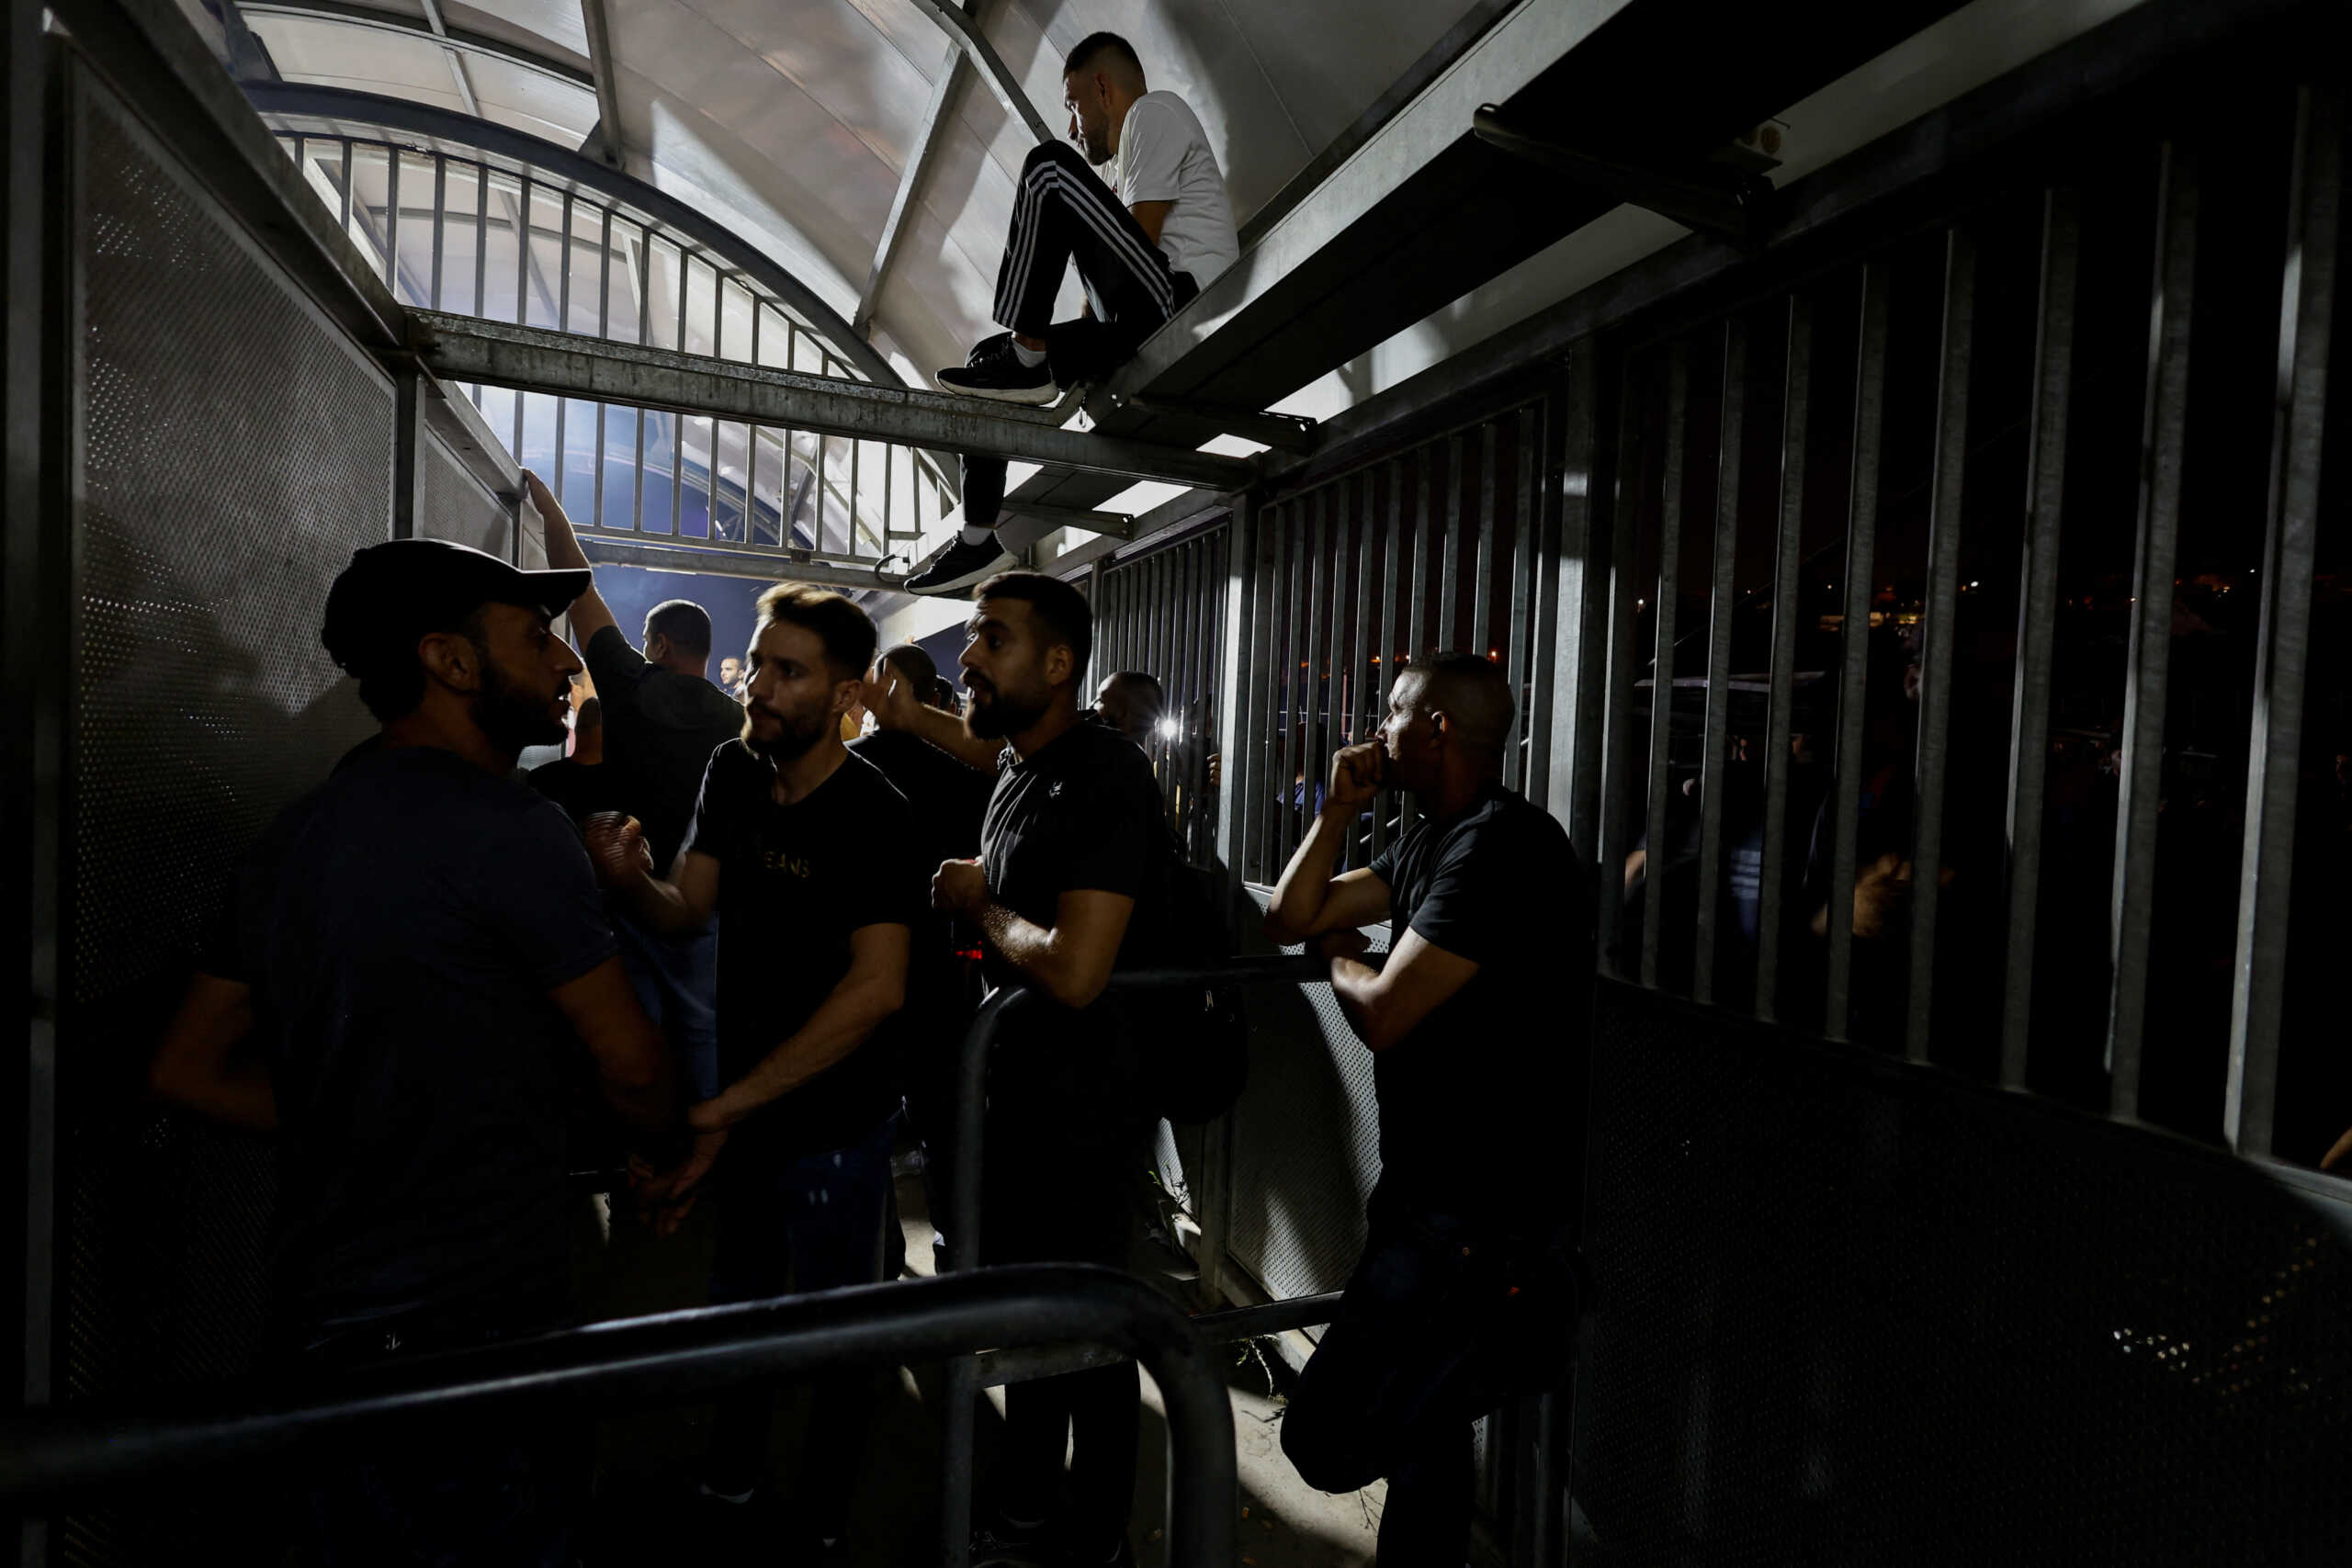 Σε απεργία χιλιάδες Παλαιστίνιοι που εργάζονται στο Ισραήλ για να μην μπαίνουν οι μισθοί τους σε τράπεζα